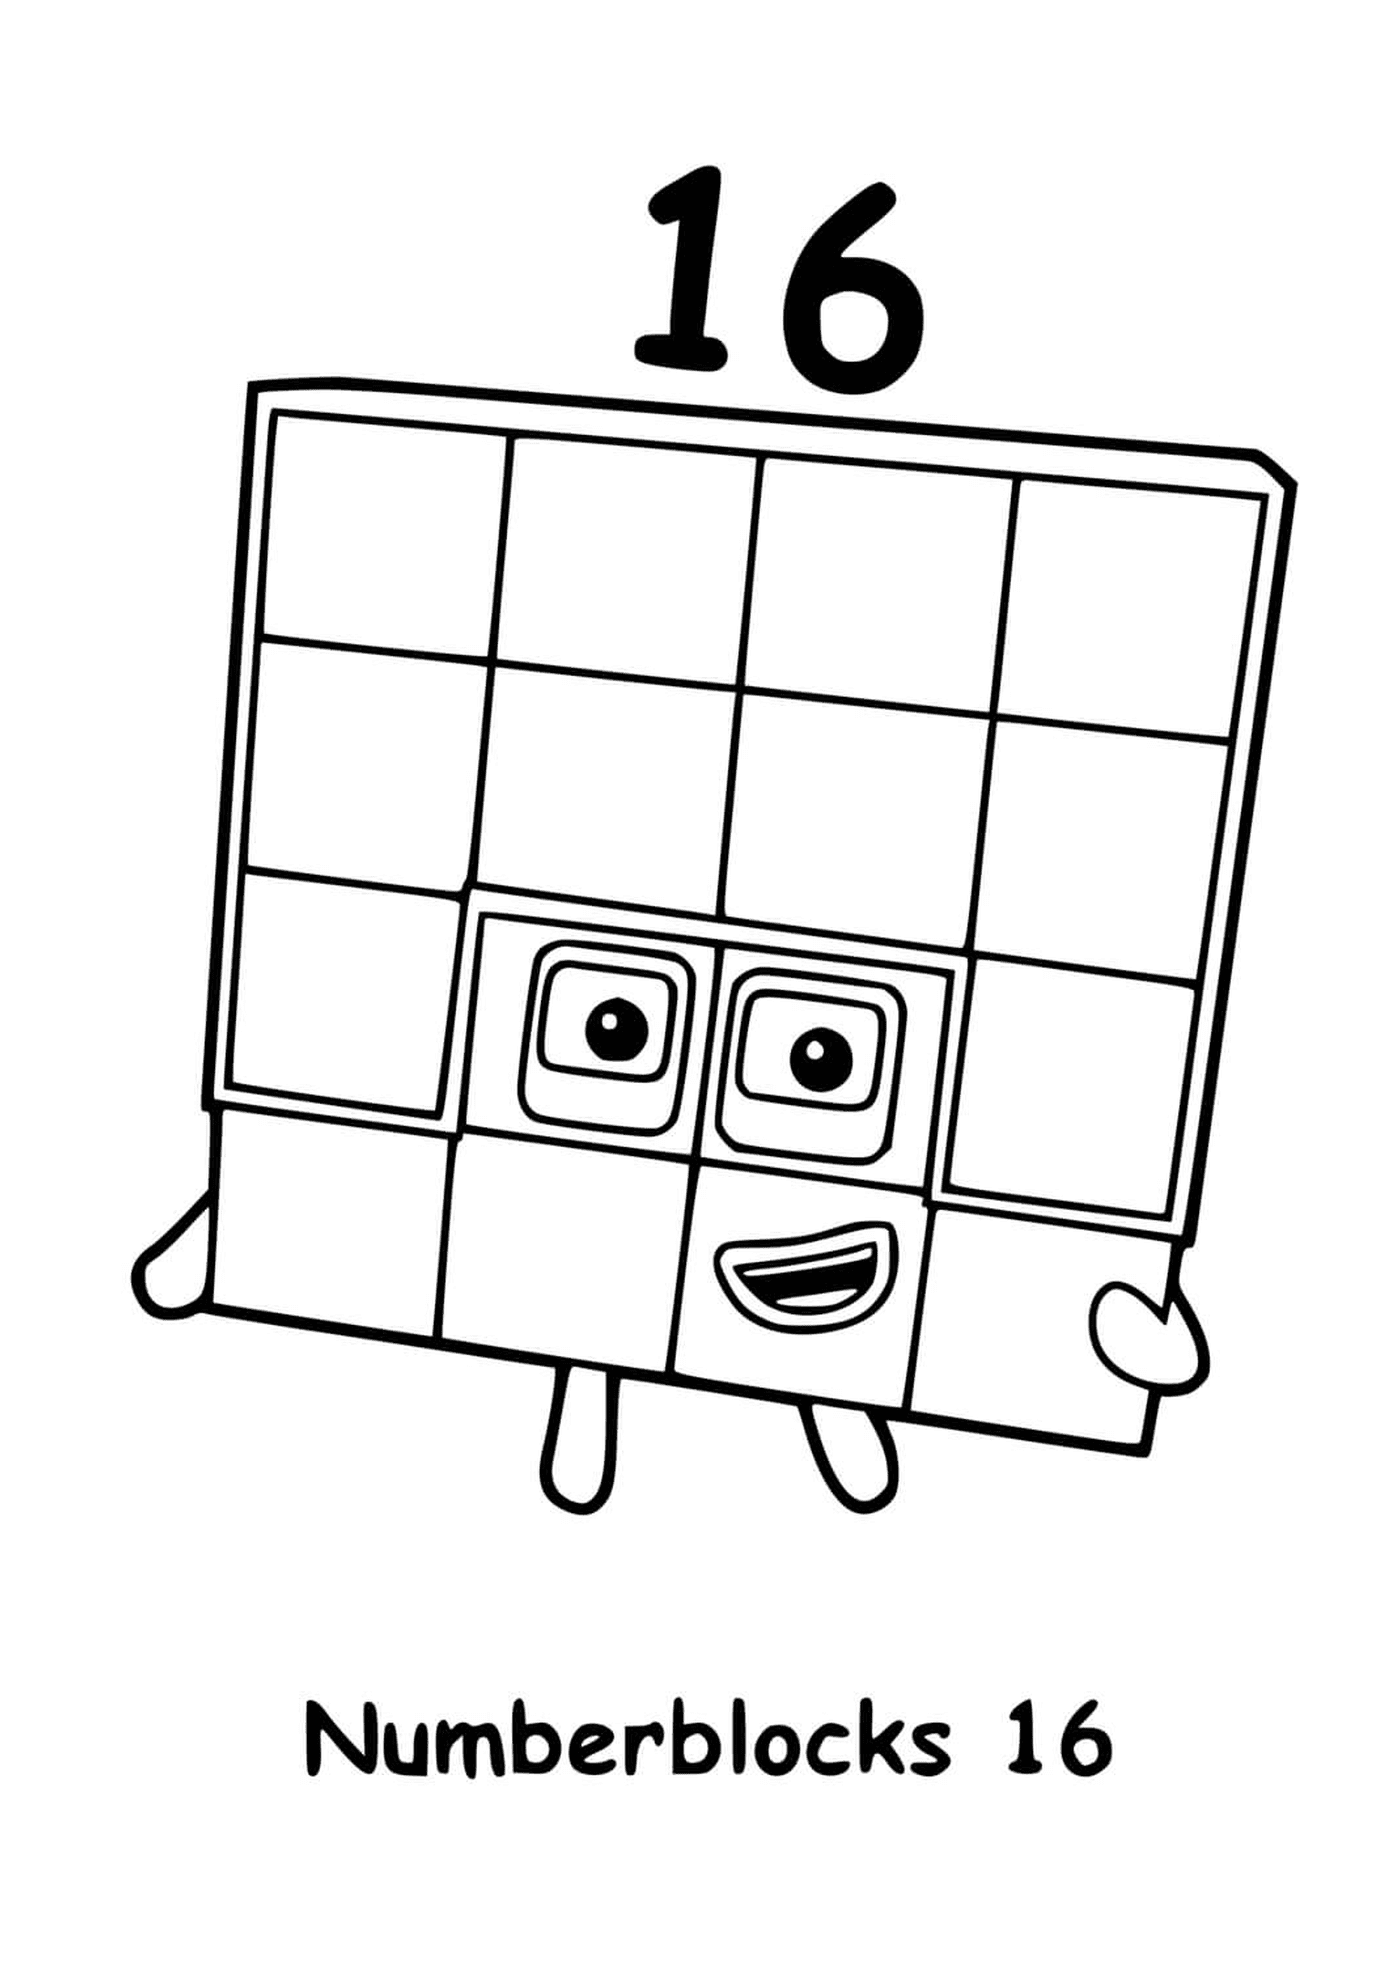  Количество блоков номер 16, в квадрате с квадратами 